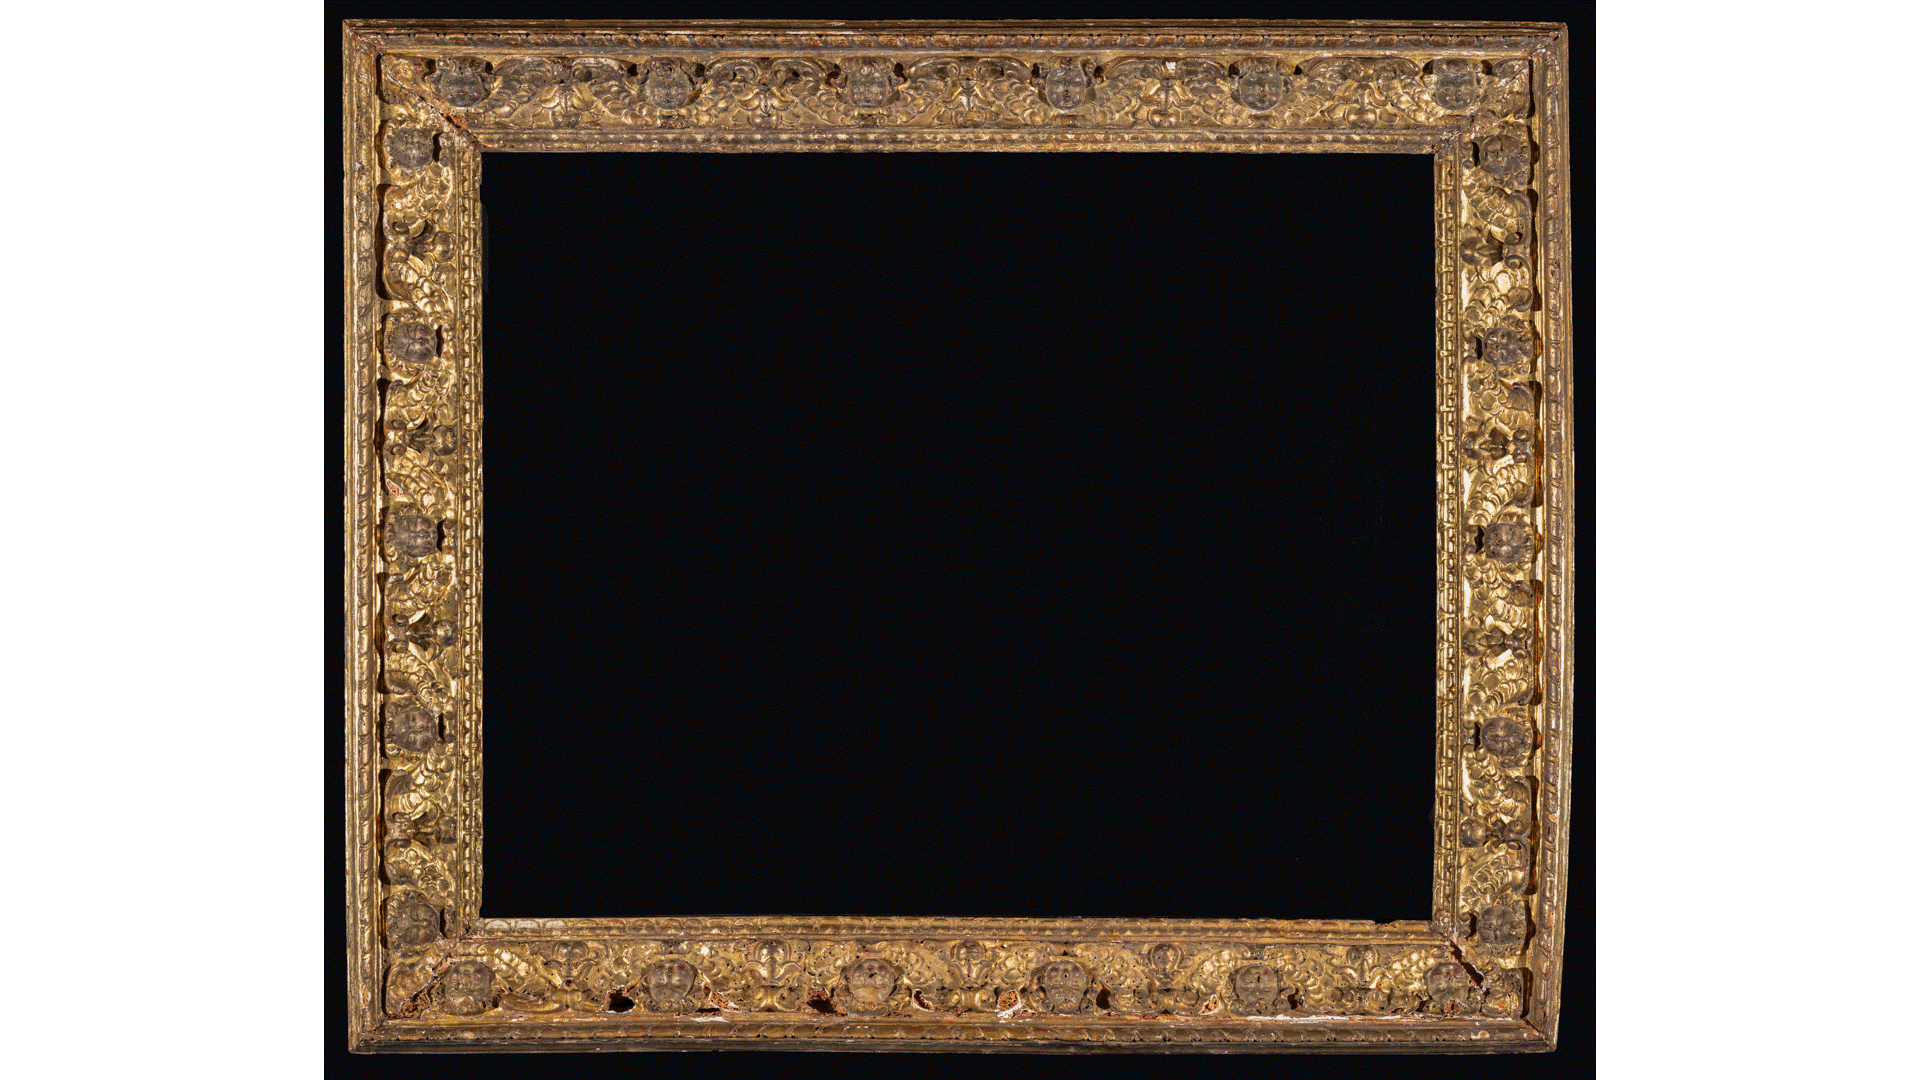 loop of Bellini frames